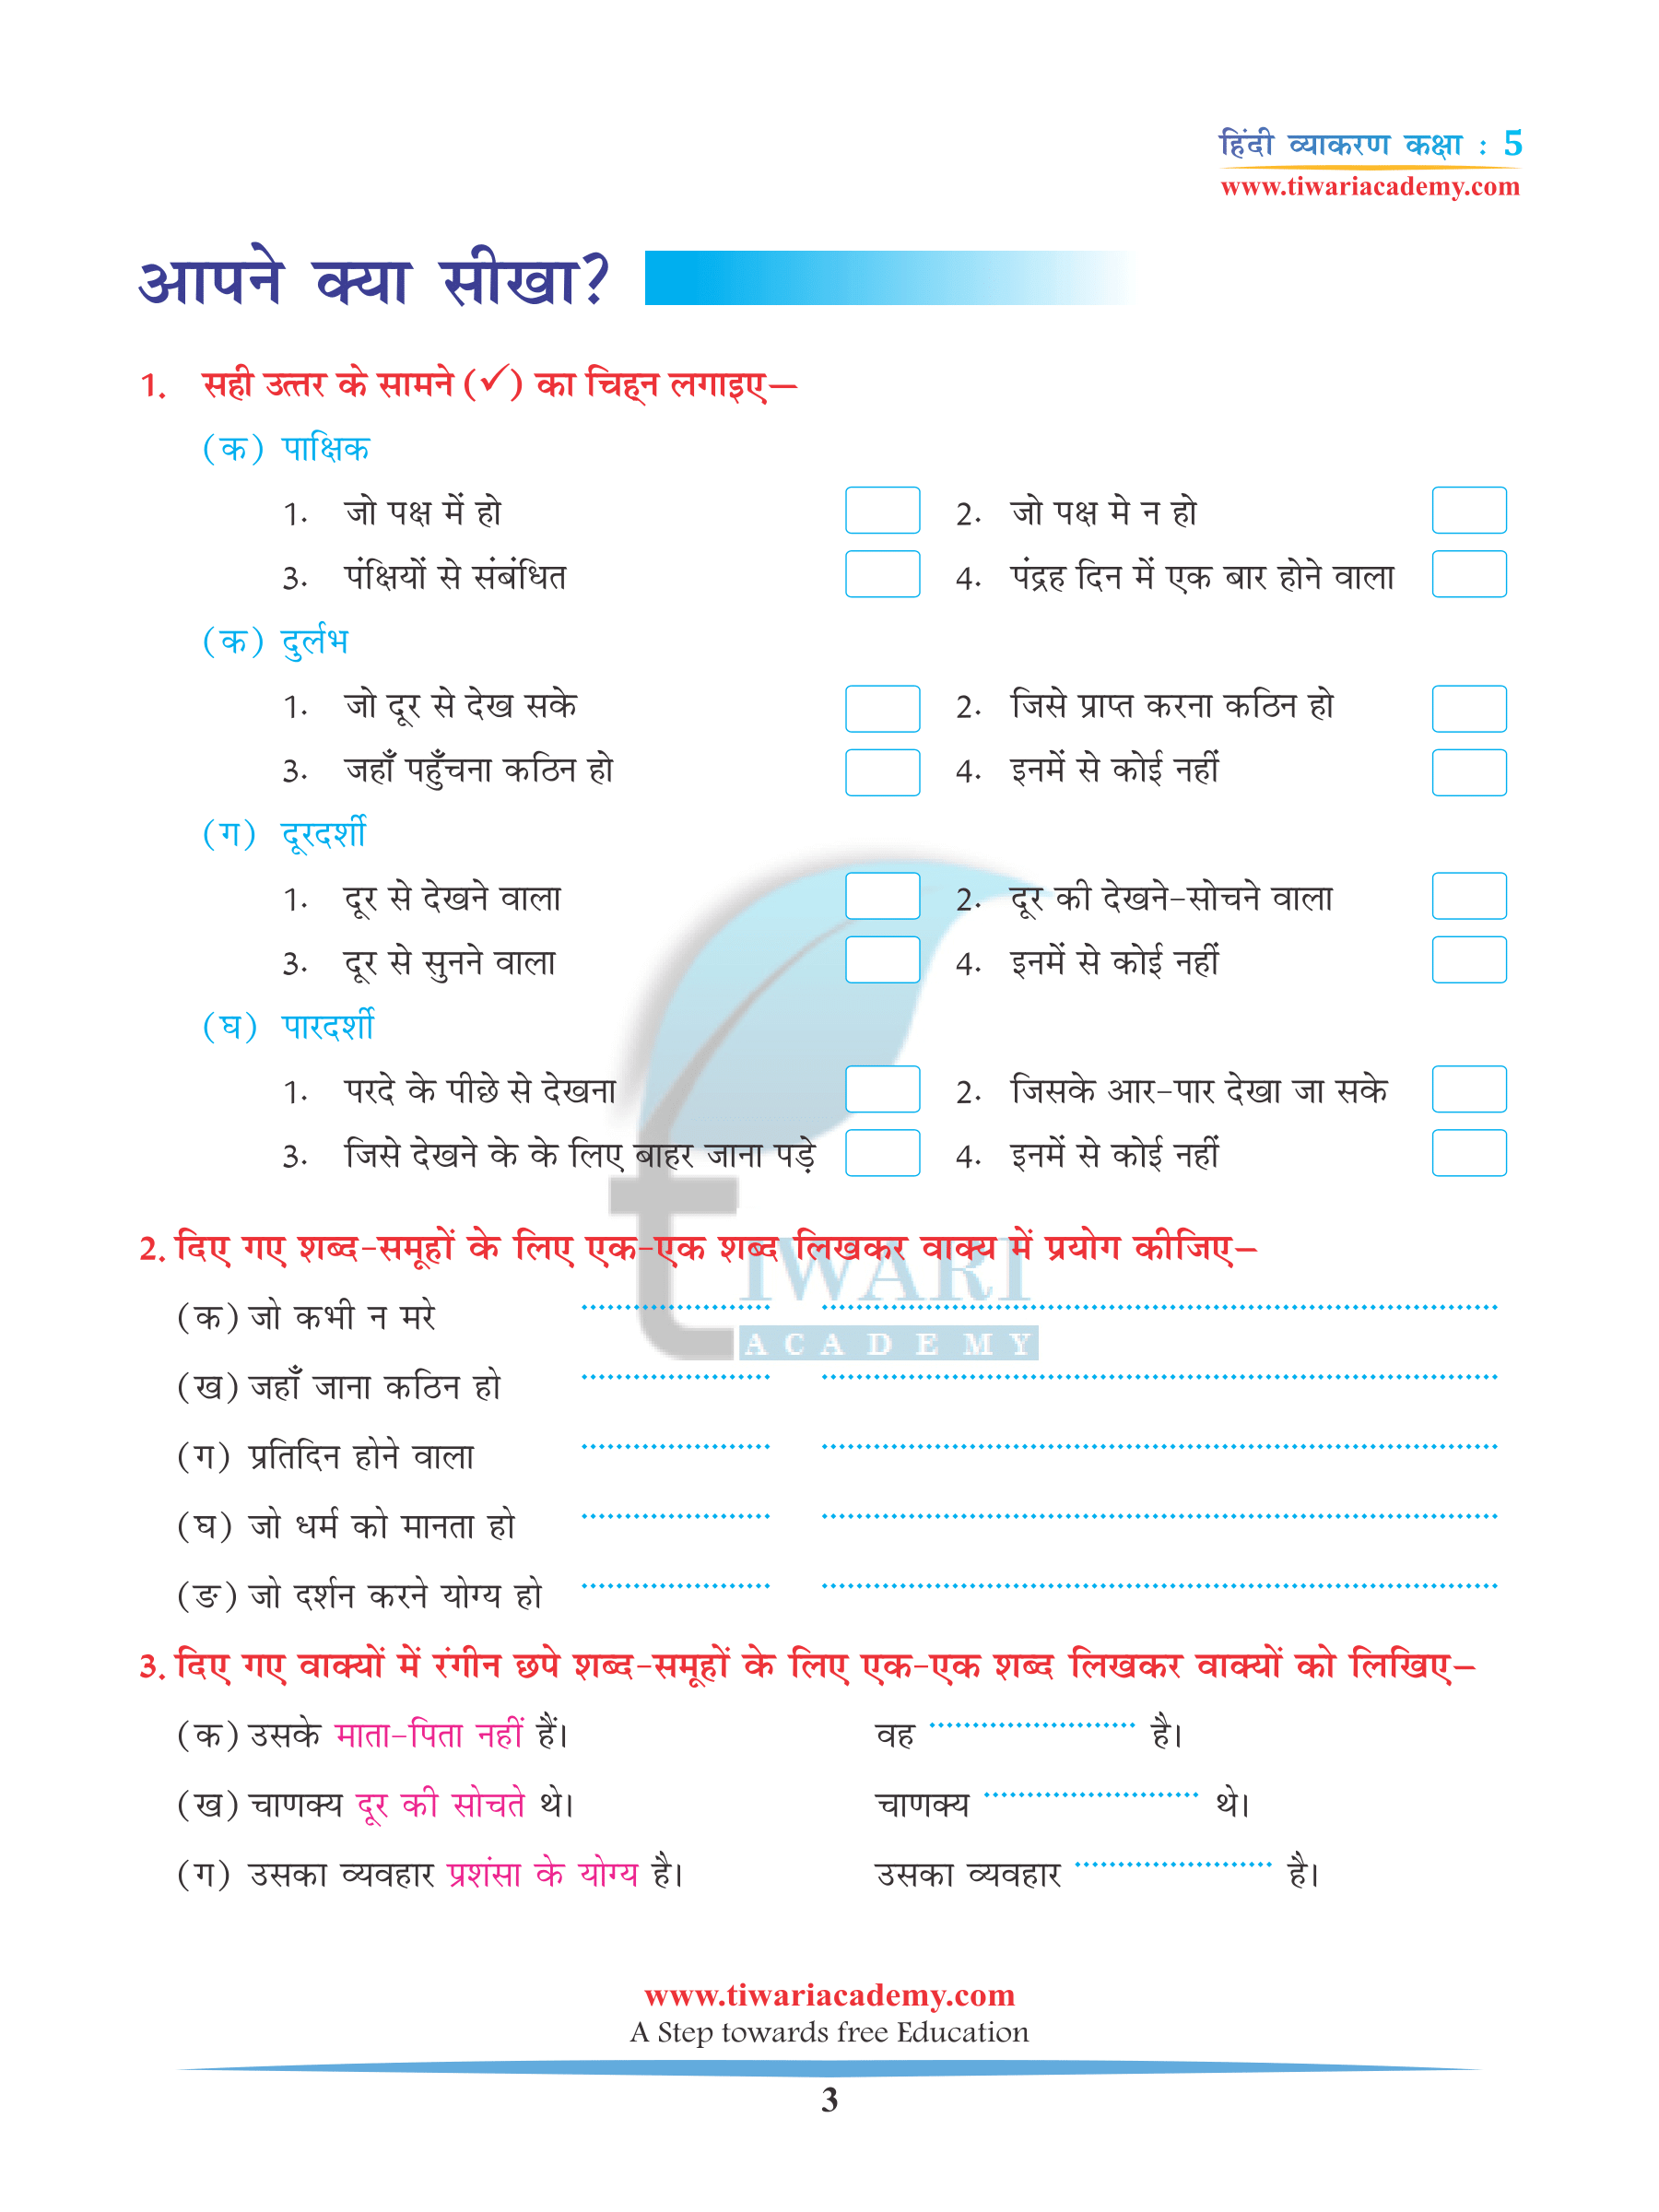 CBSE Class 5 Hindi Grammar Chapter 16